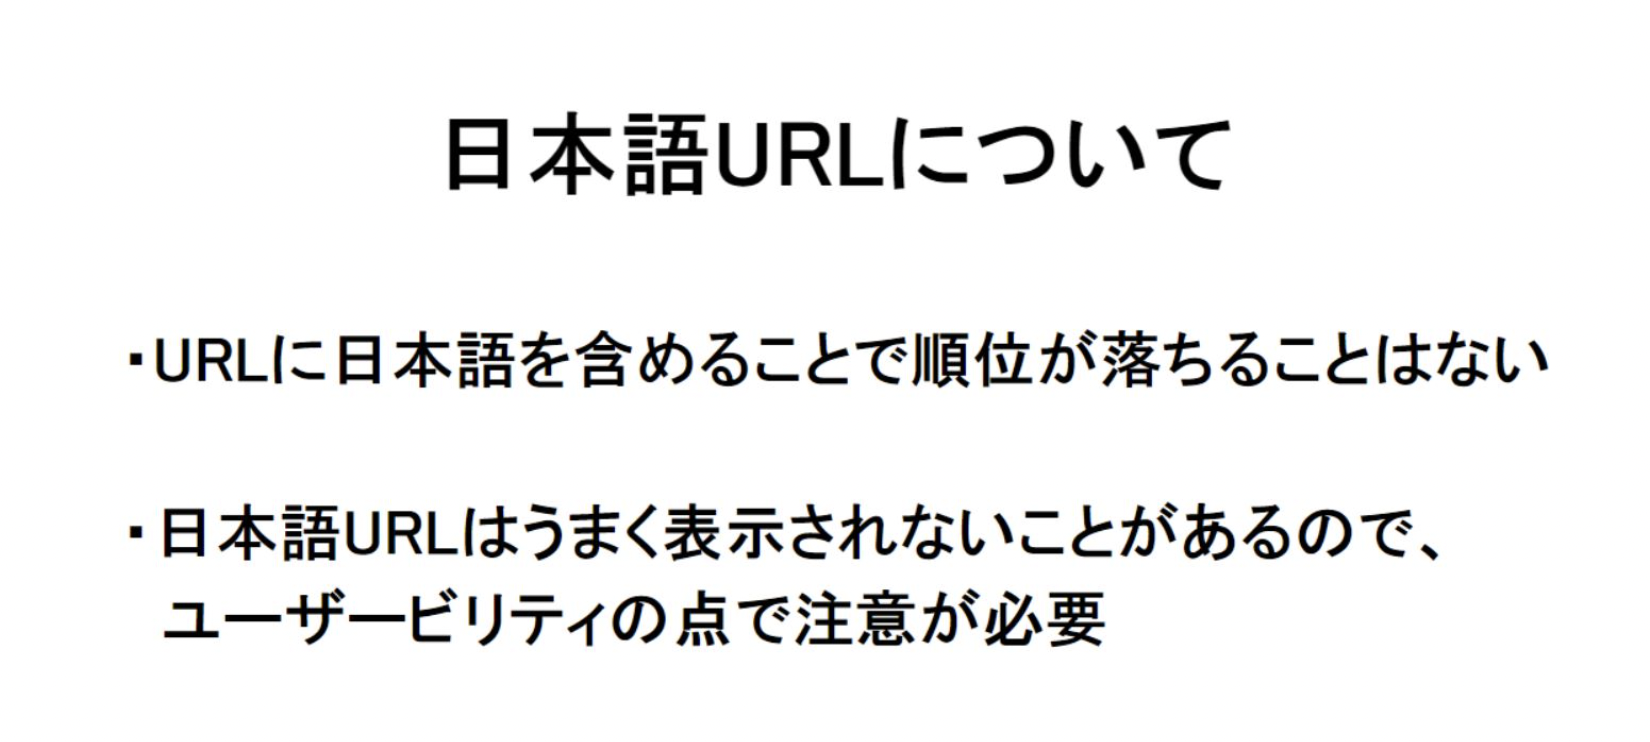 日本語URLの特徴と注意点